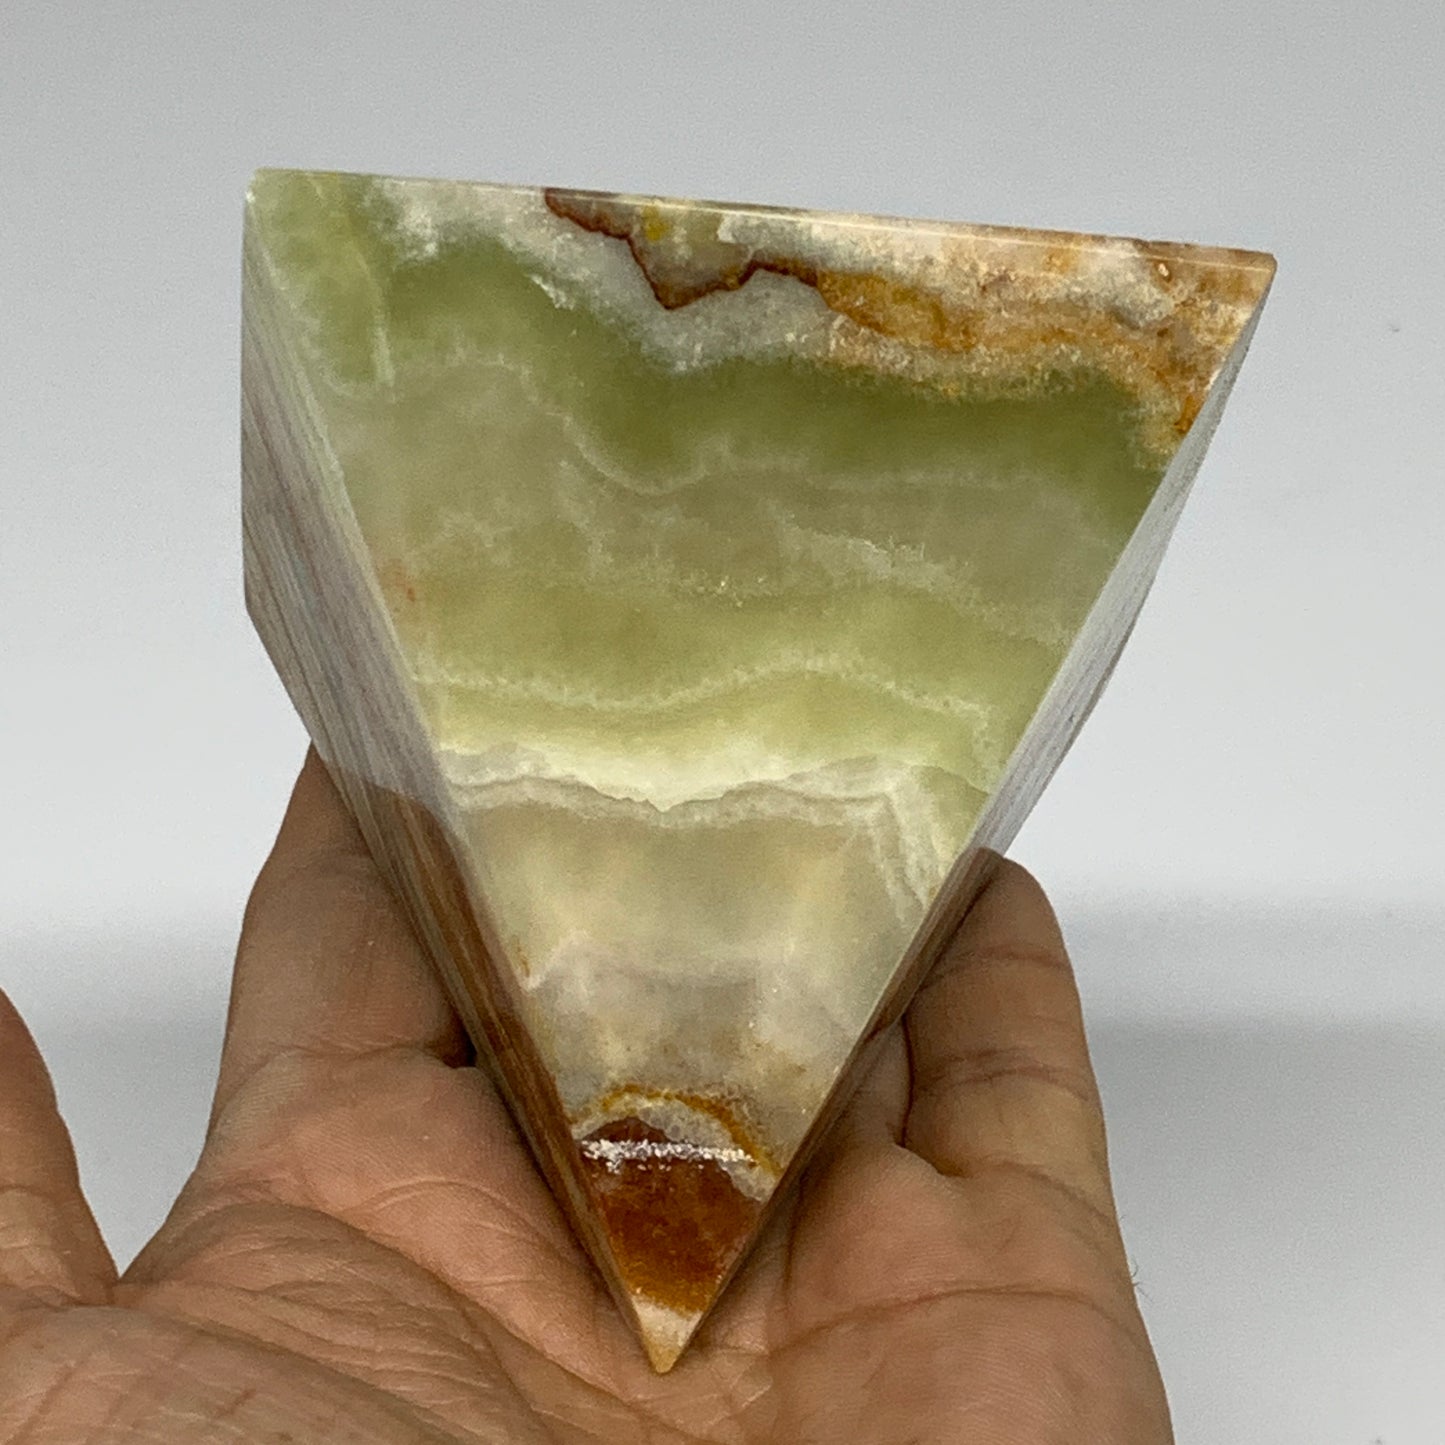 0.97 lbs, 3"x3"x3", Green Onyx Pyramid Gemstone Crystal, B32463